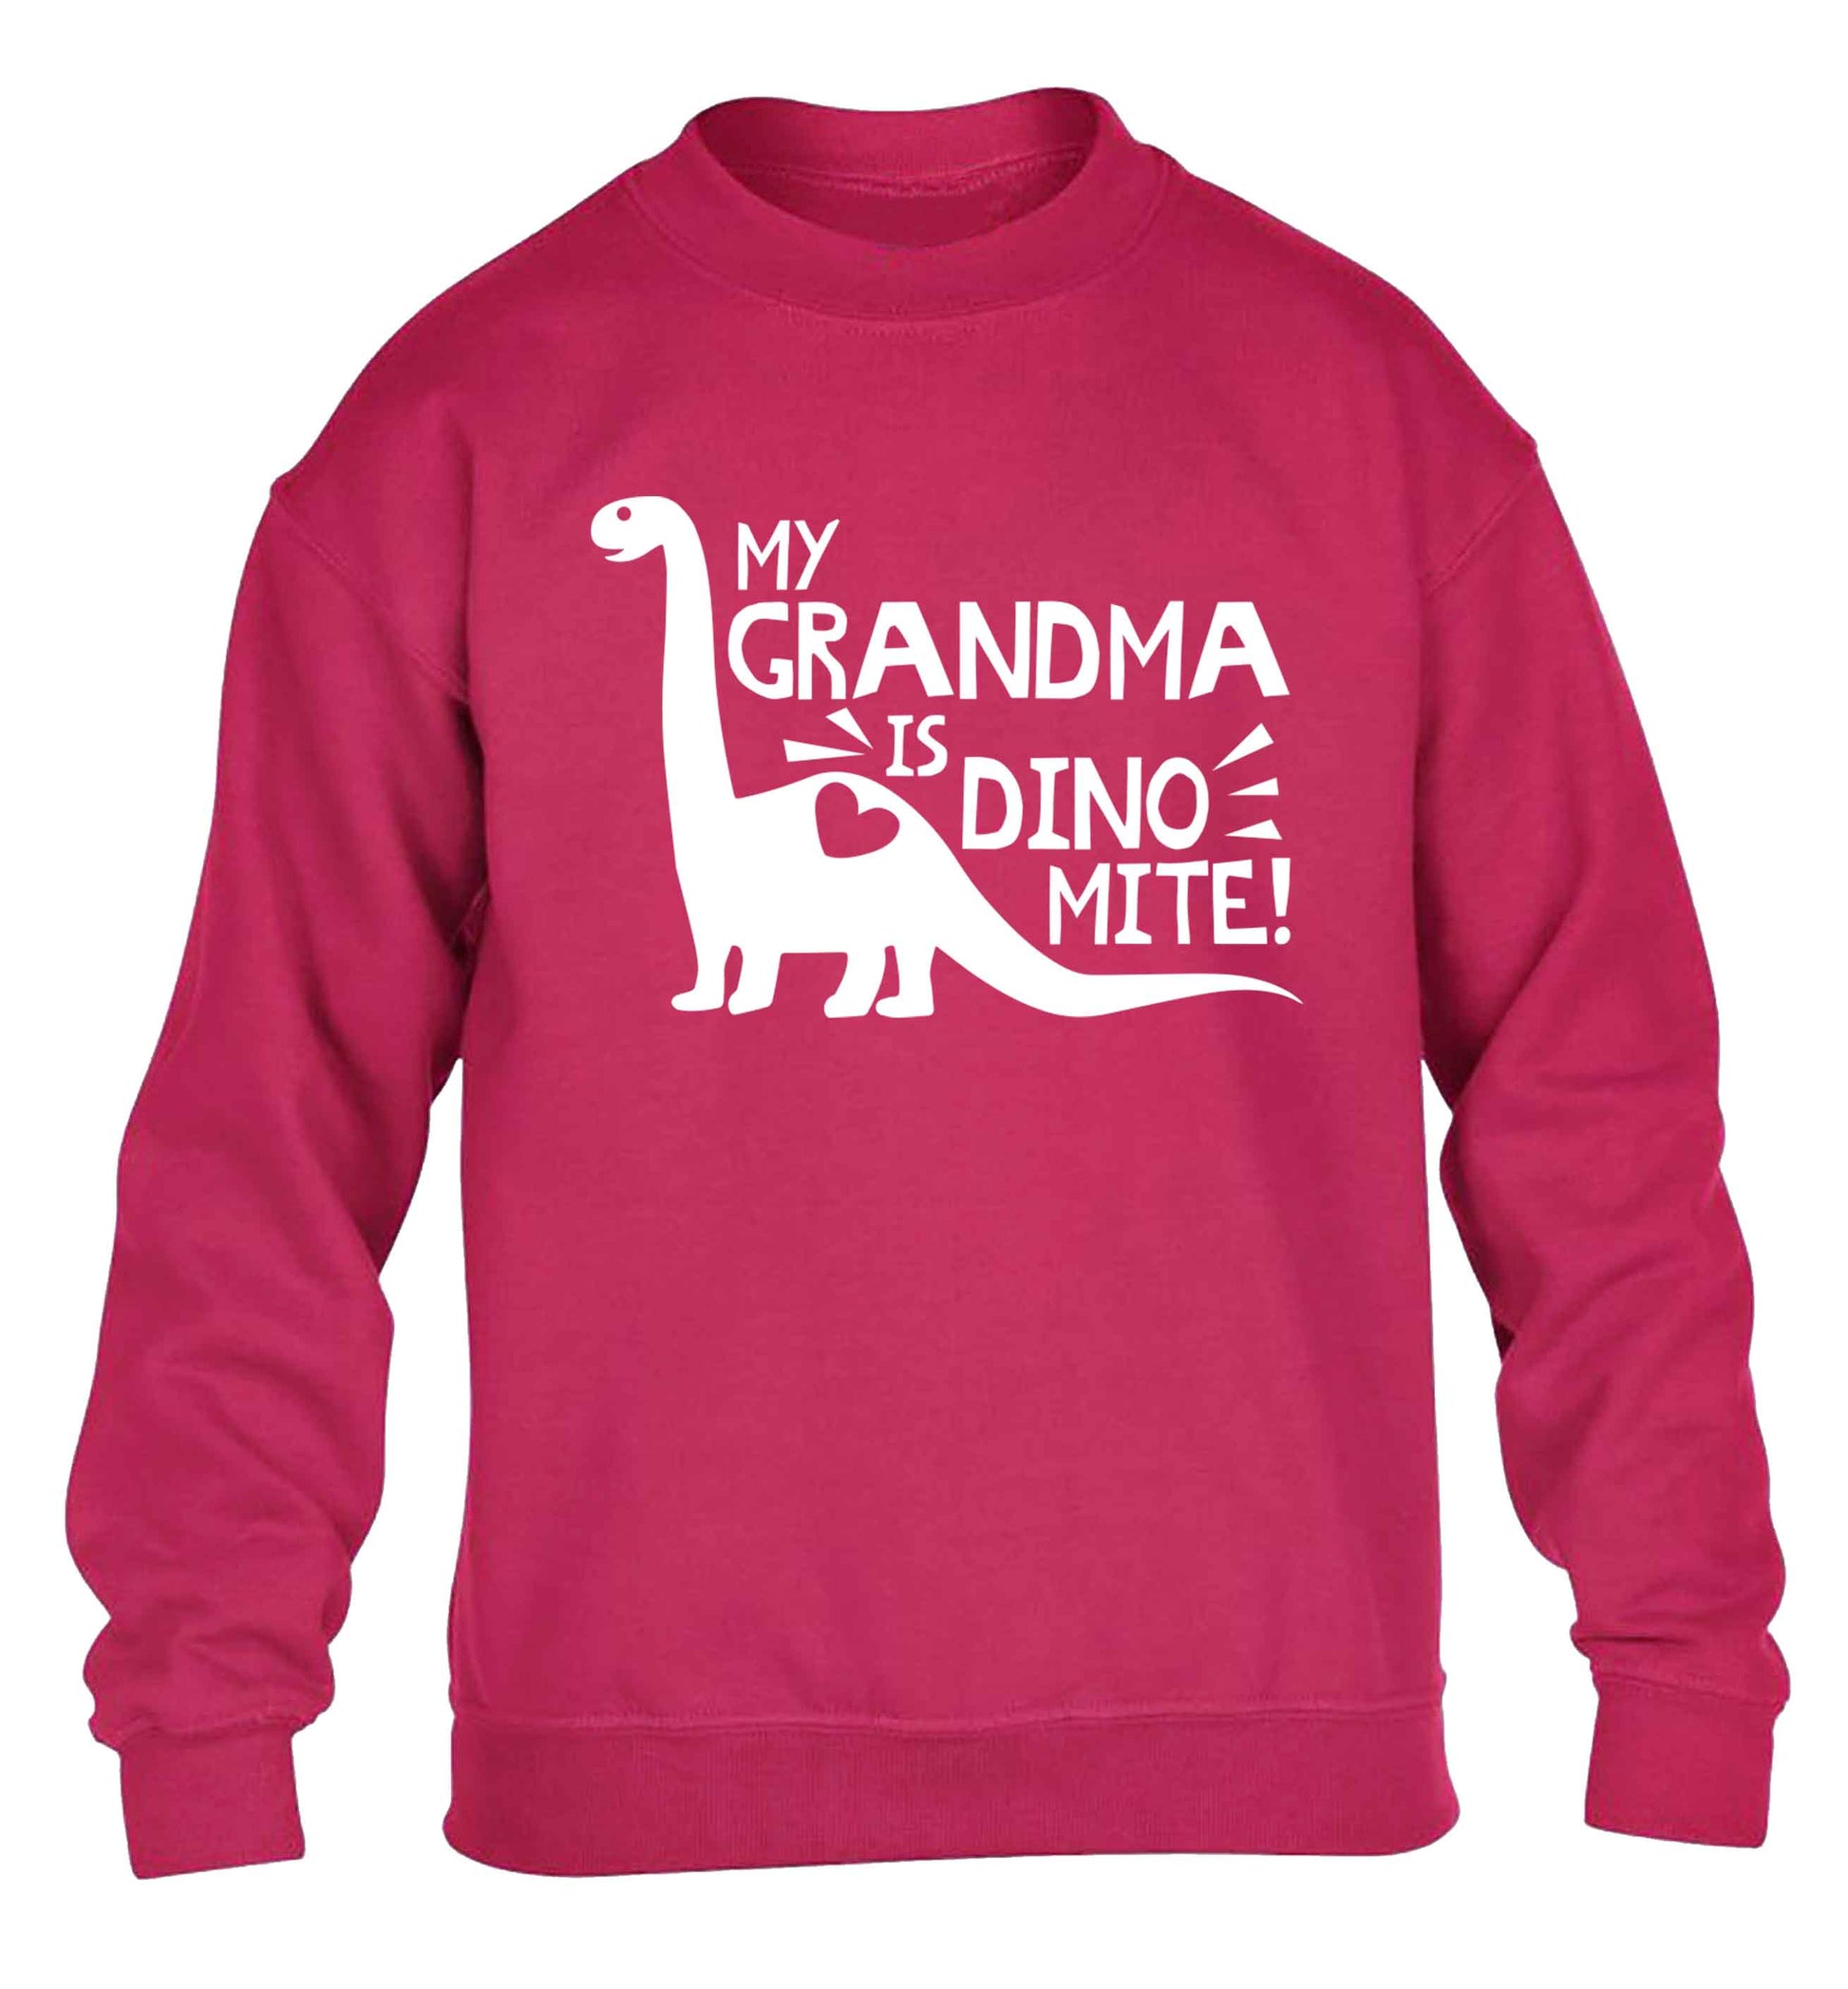 My grandma is dinomite! children's pink sweater 12-13 Years